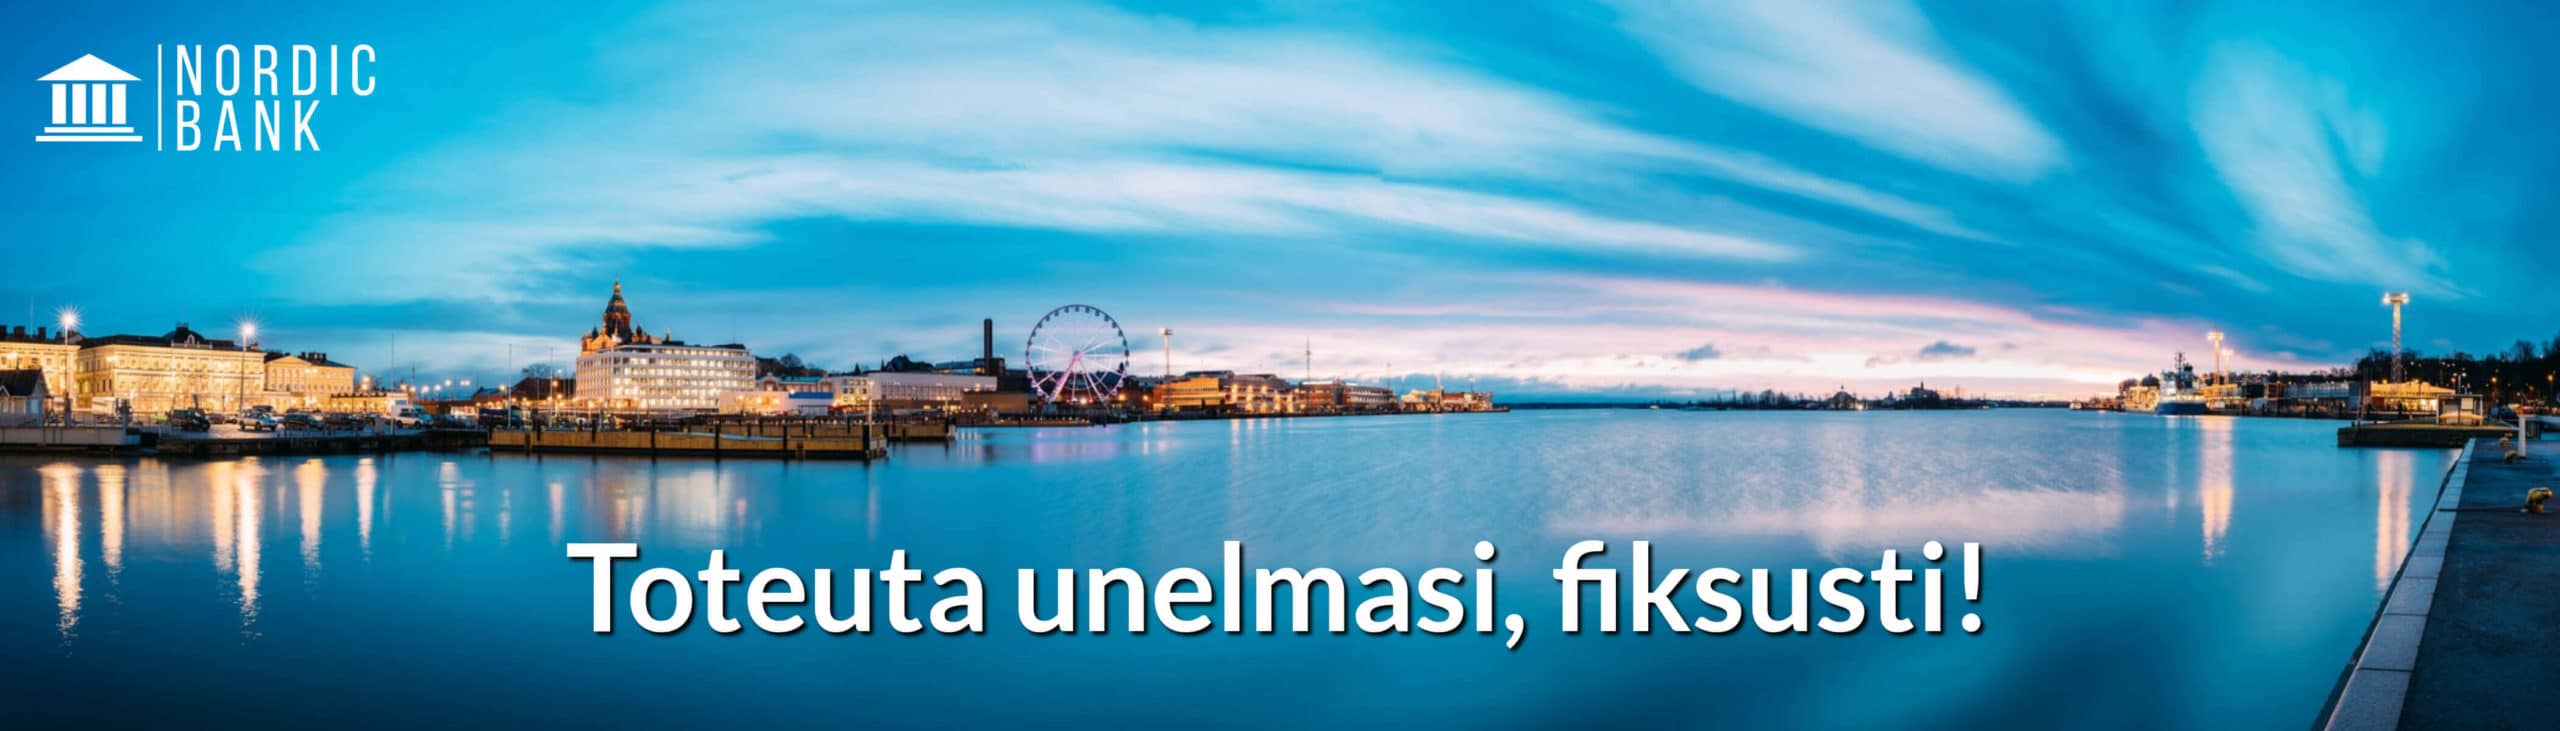 Kilpailuta Vauraus Suomi yrityslaina turvallisesti verkossa ja toteuta unelmasi fiksusti!